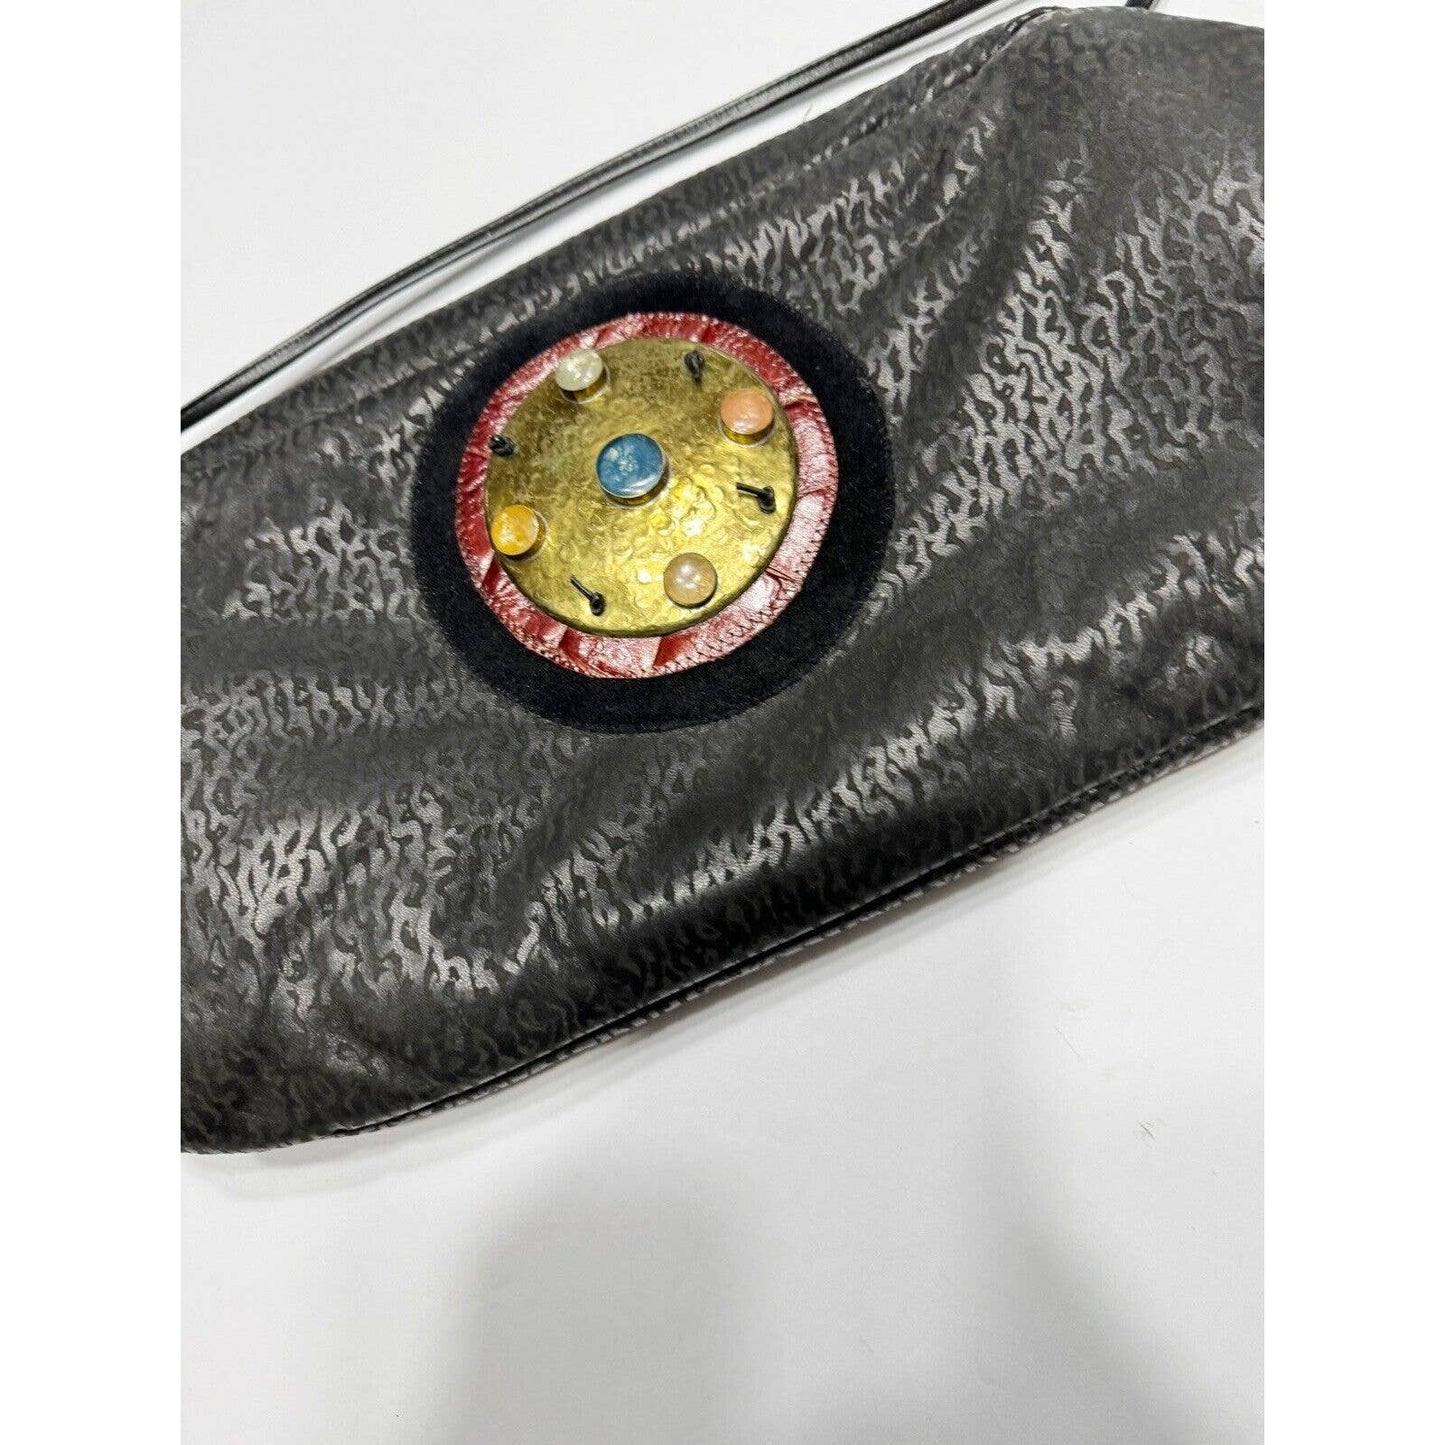 UnbrandedVintage Textured Leather OOAK Black Shoulder Bag Brass And Glass Embellishment - Black Dog Vintage